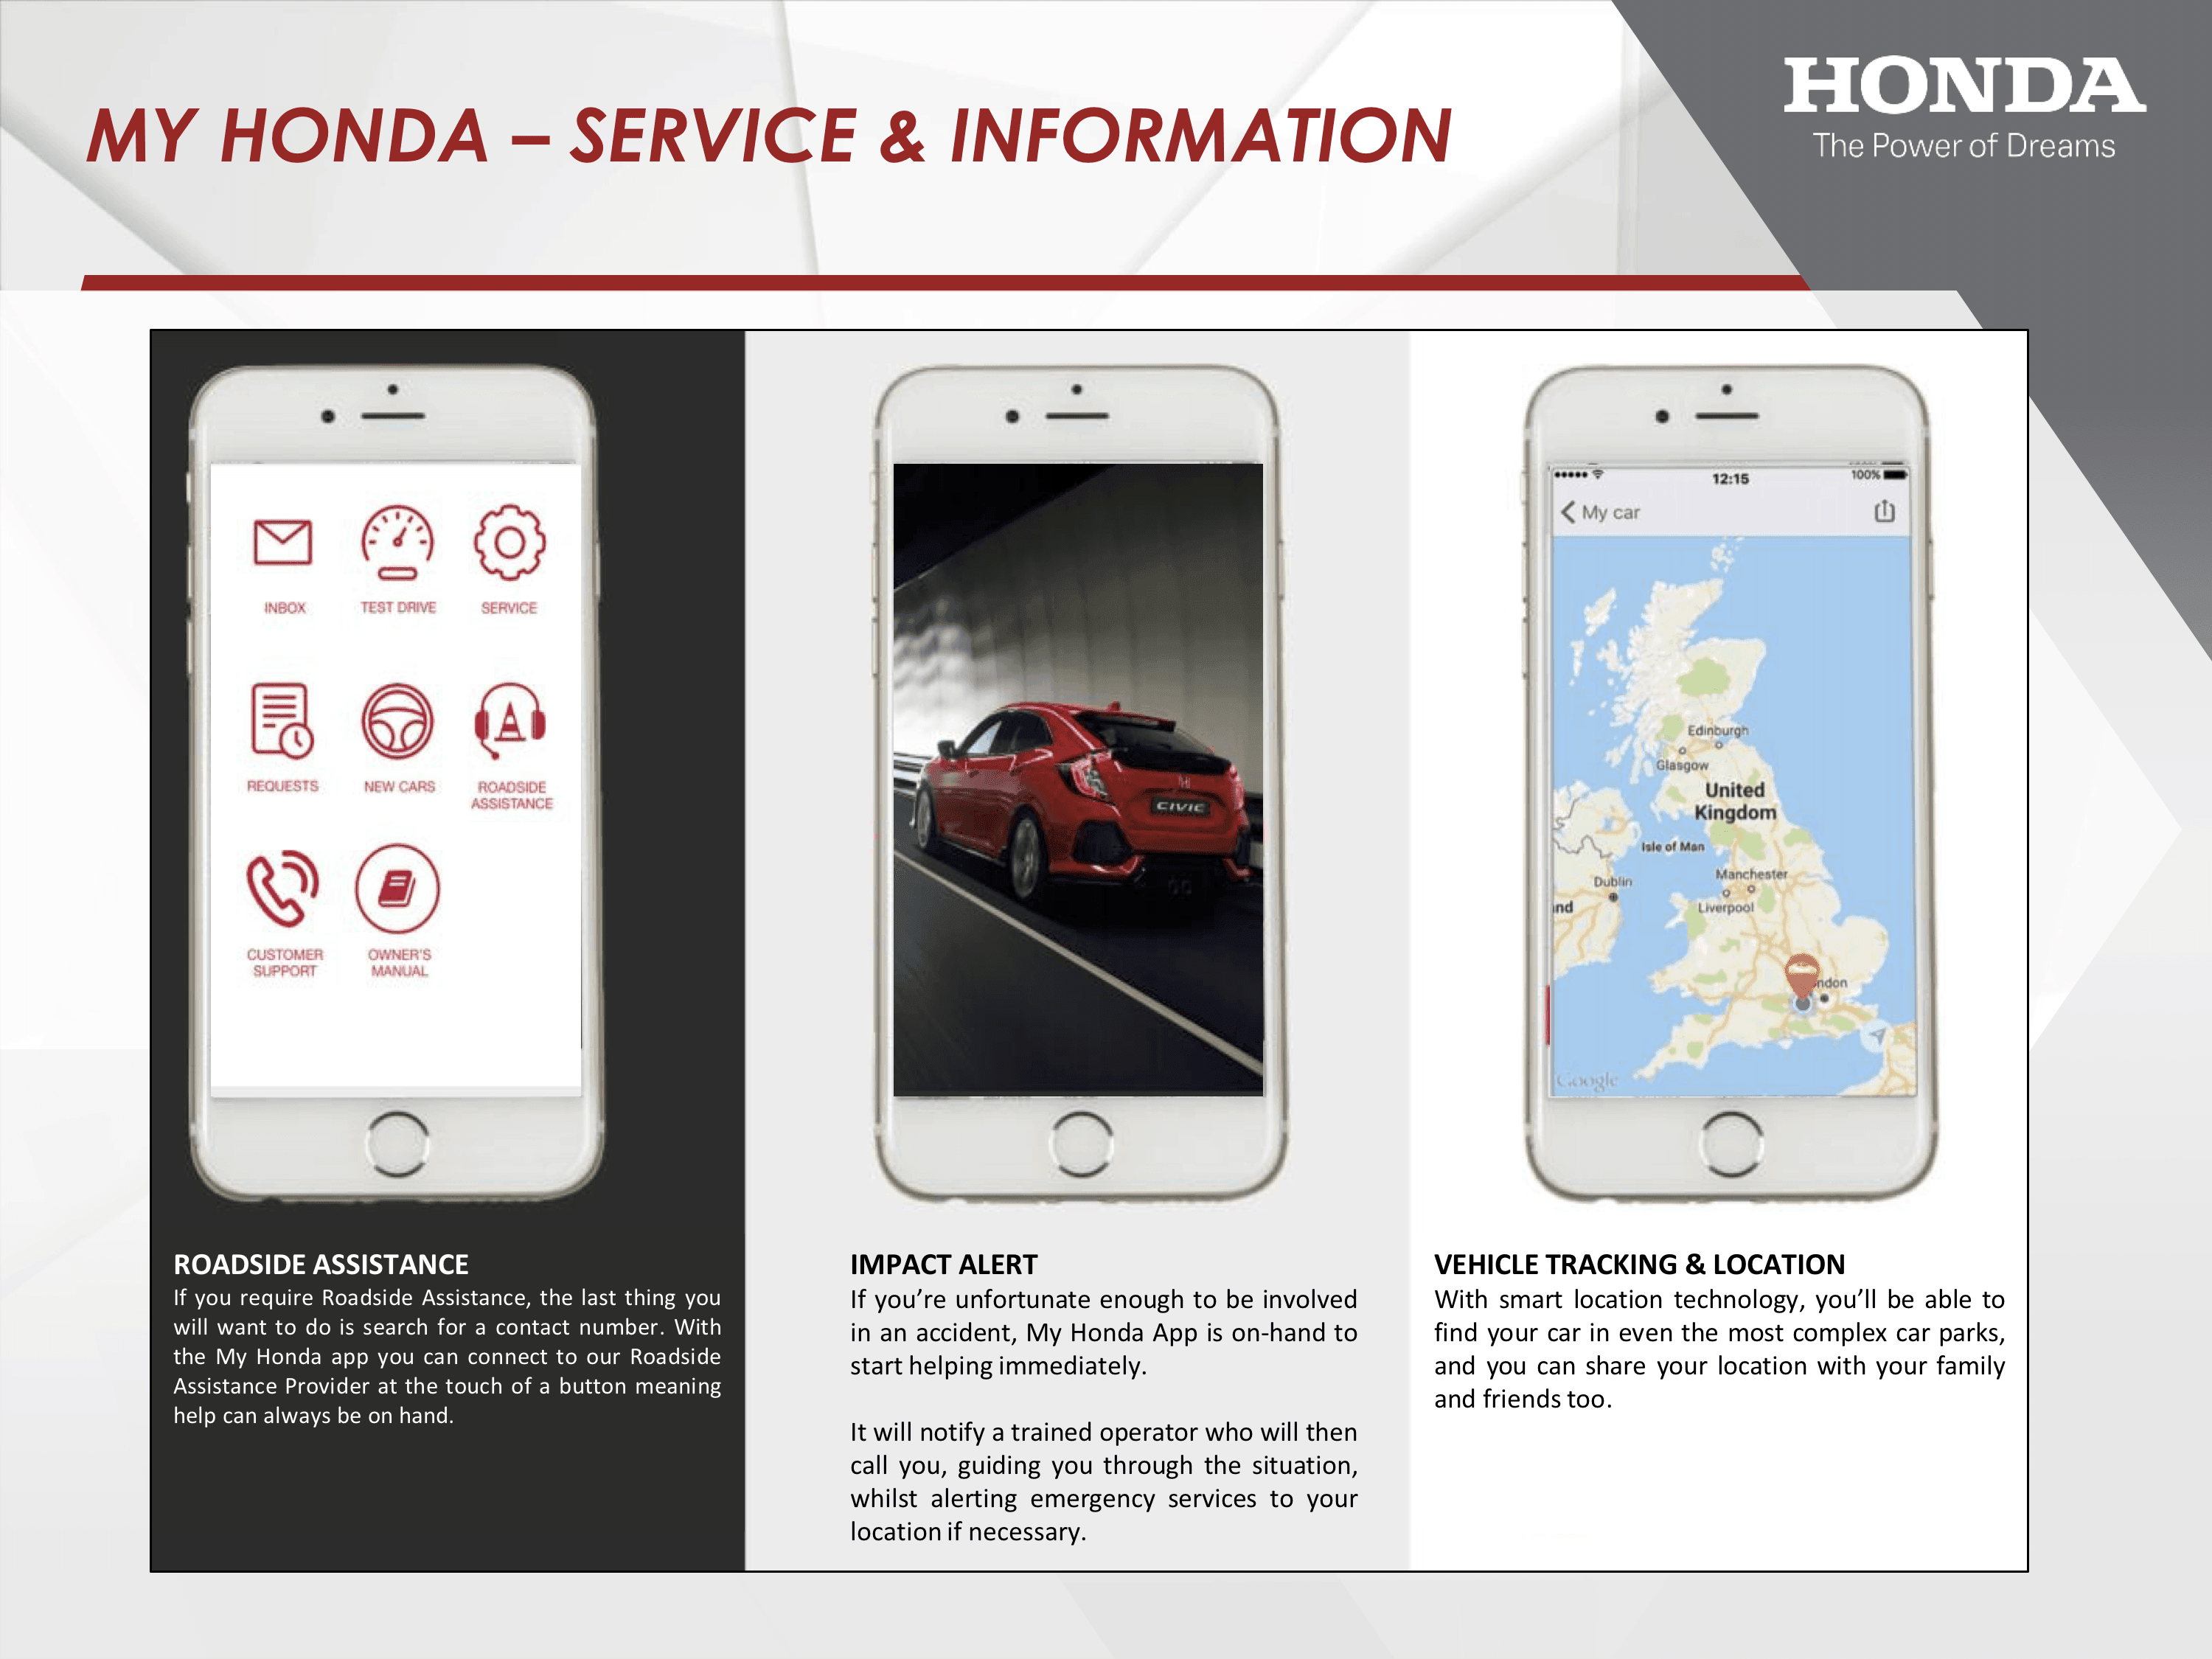 My Honda app